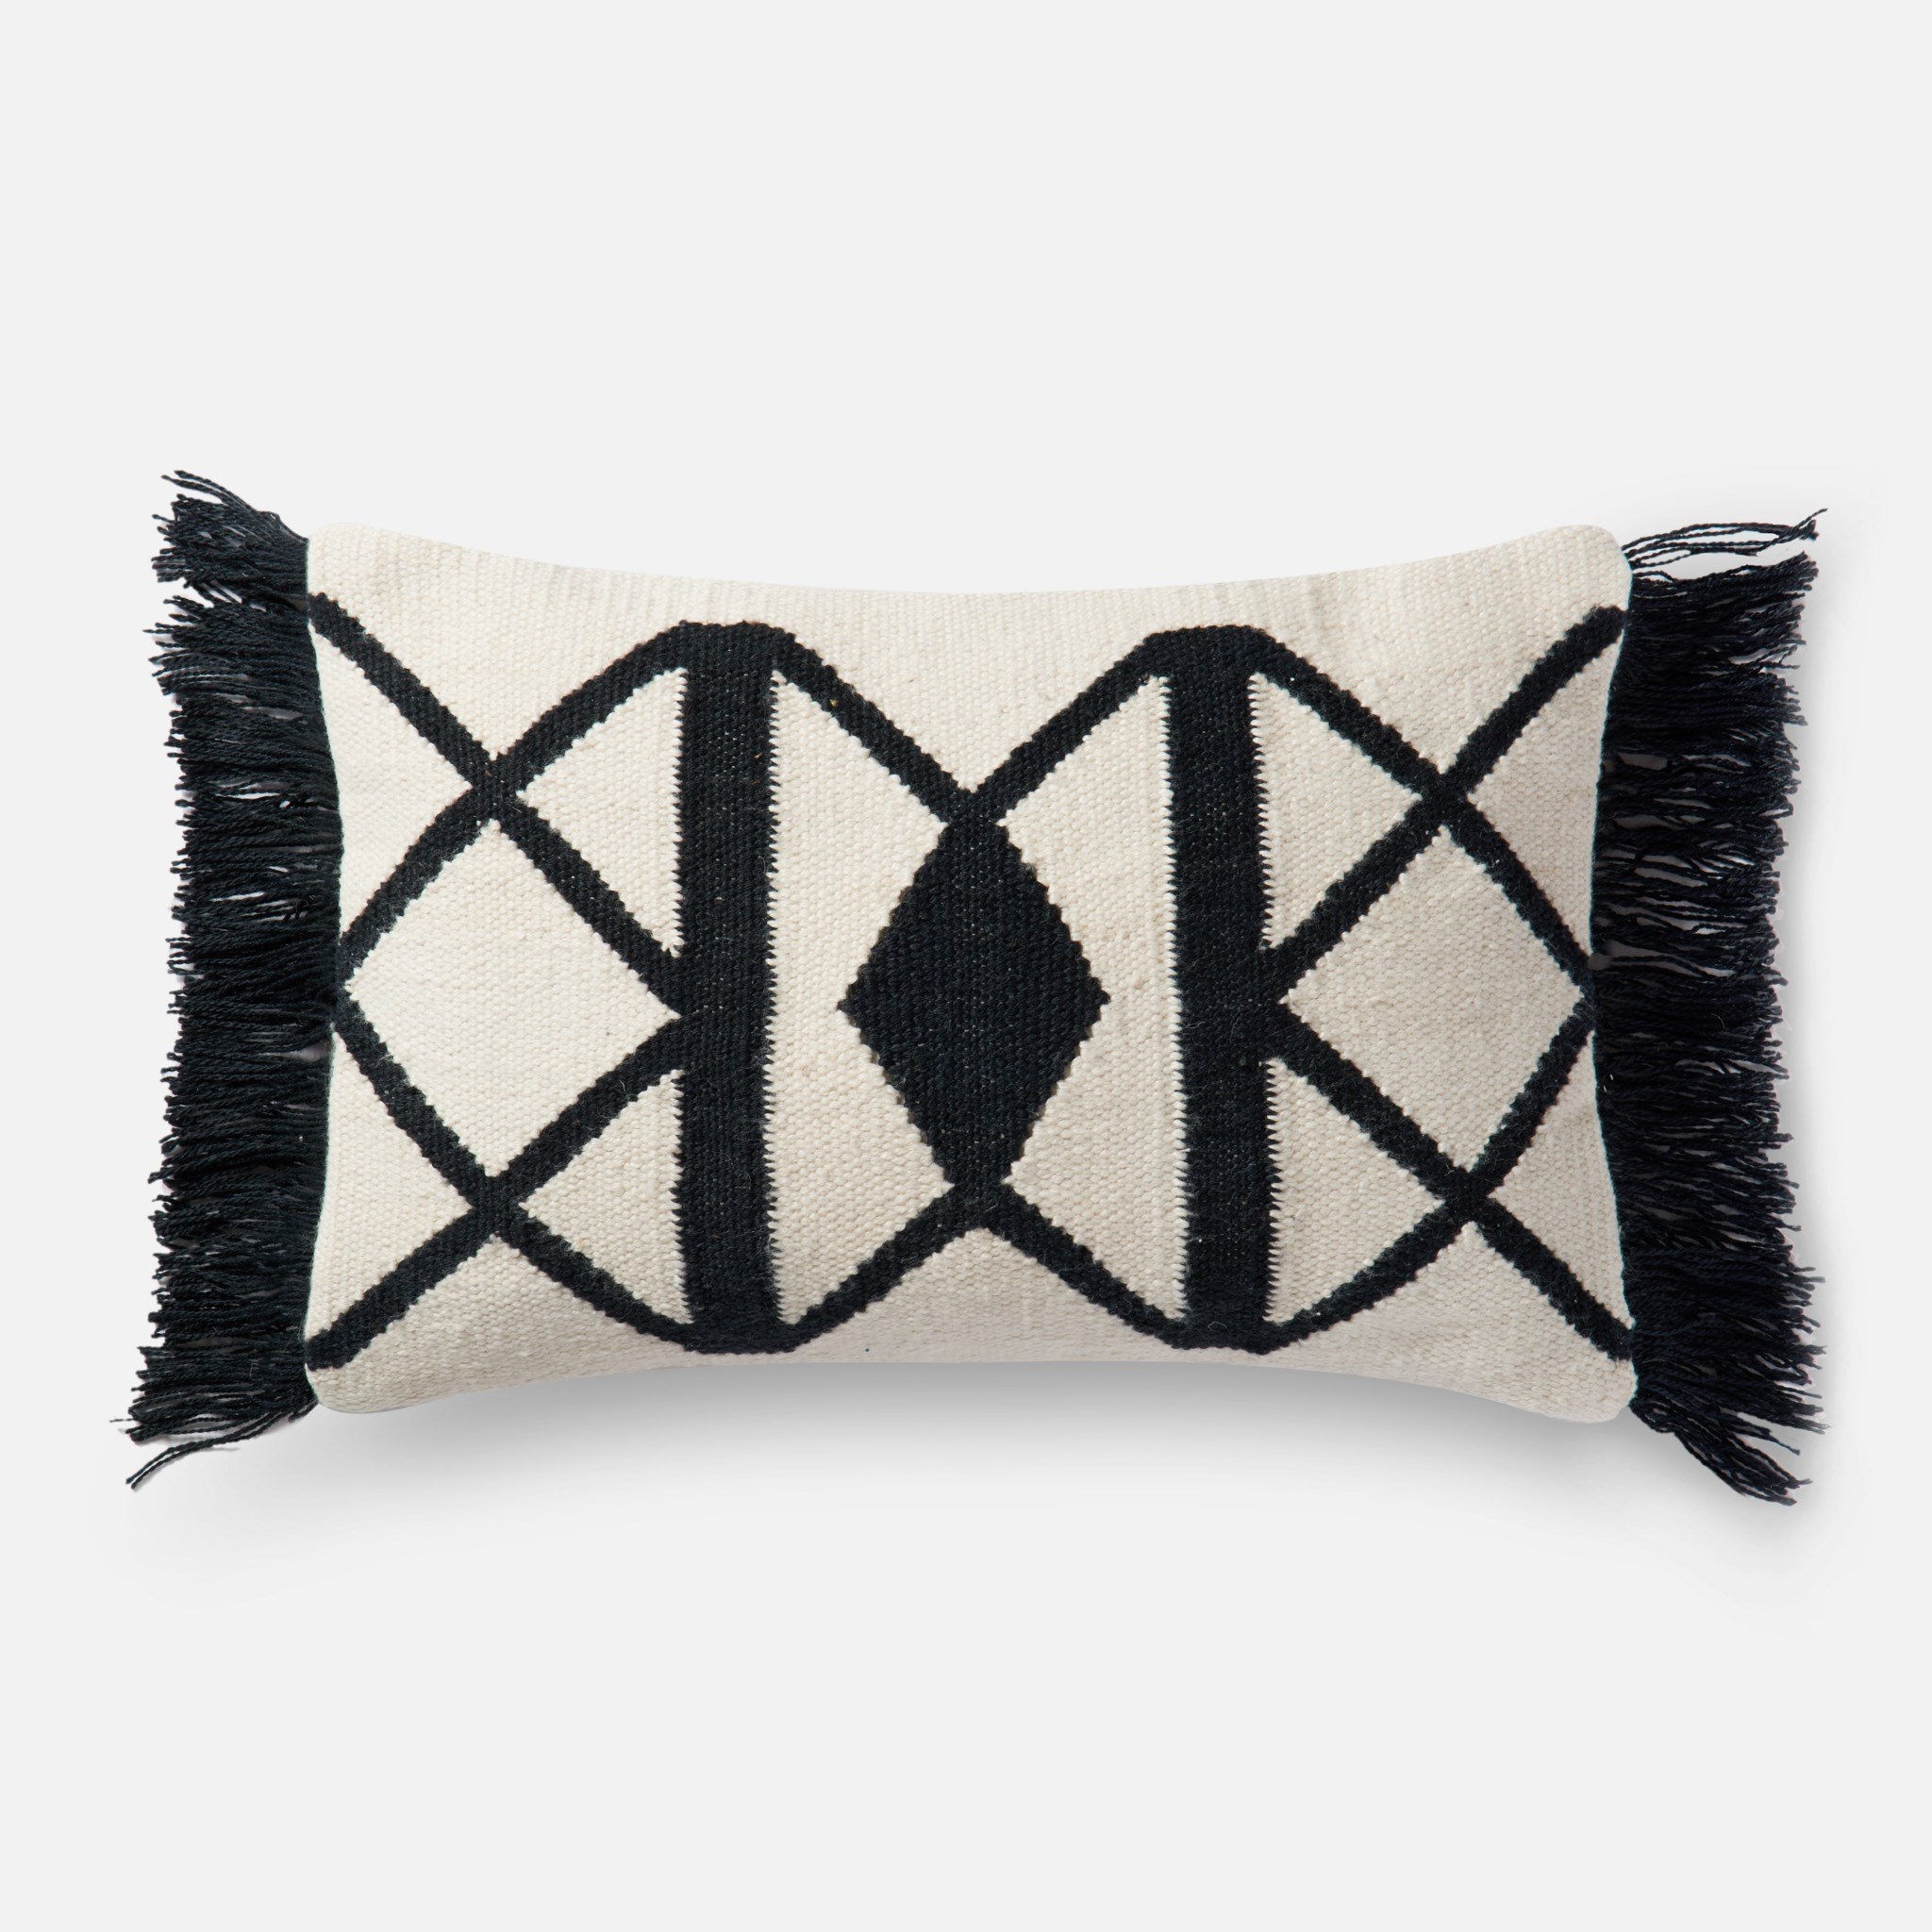 Gotland Lumbar Pillow Cover, 21" x 13" - Image 0